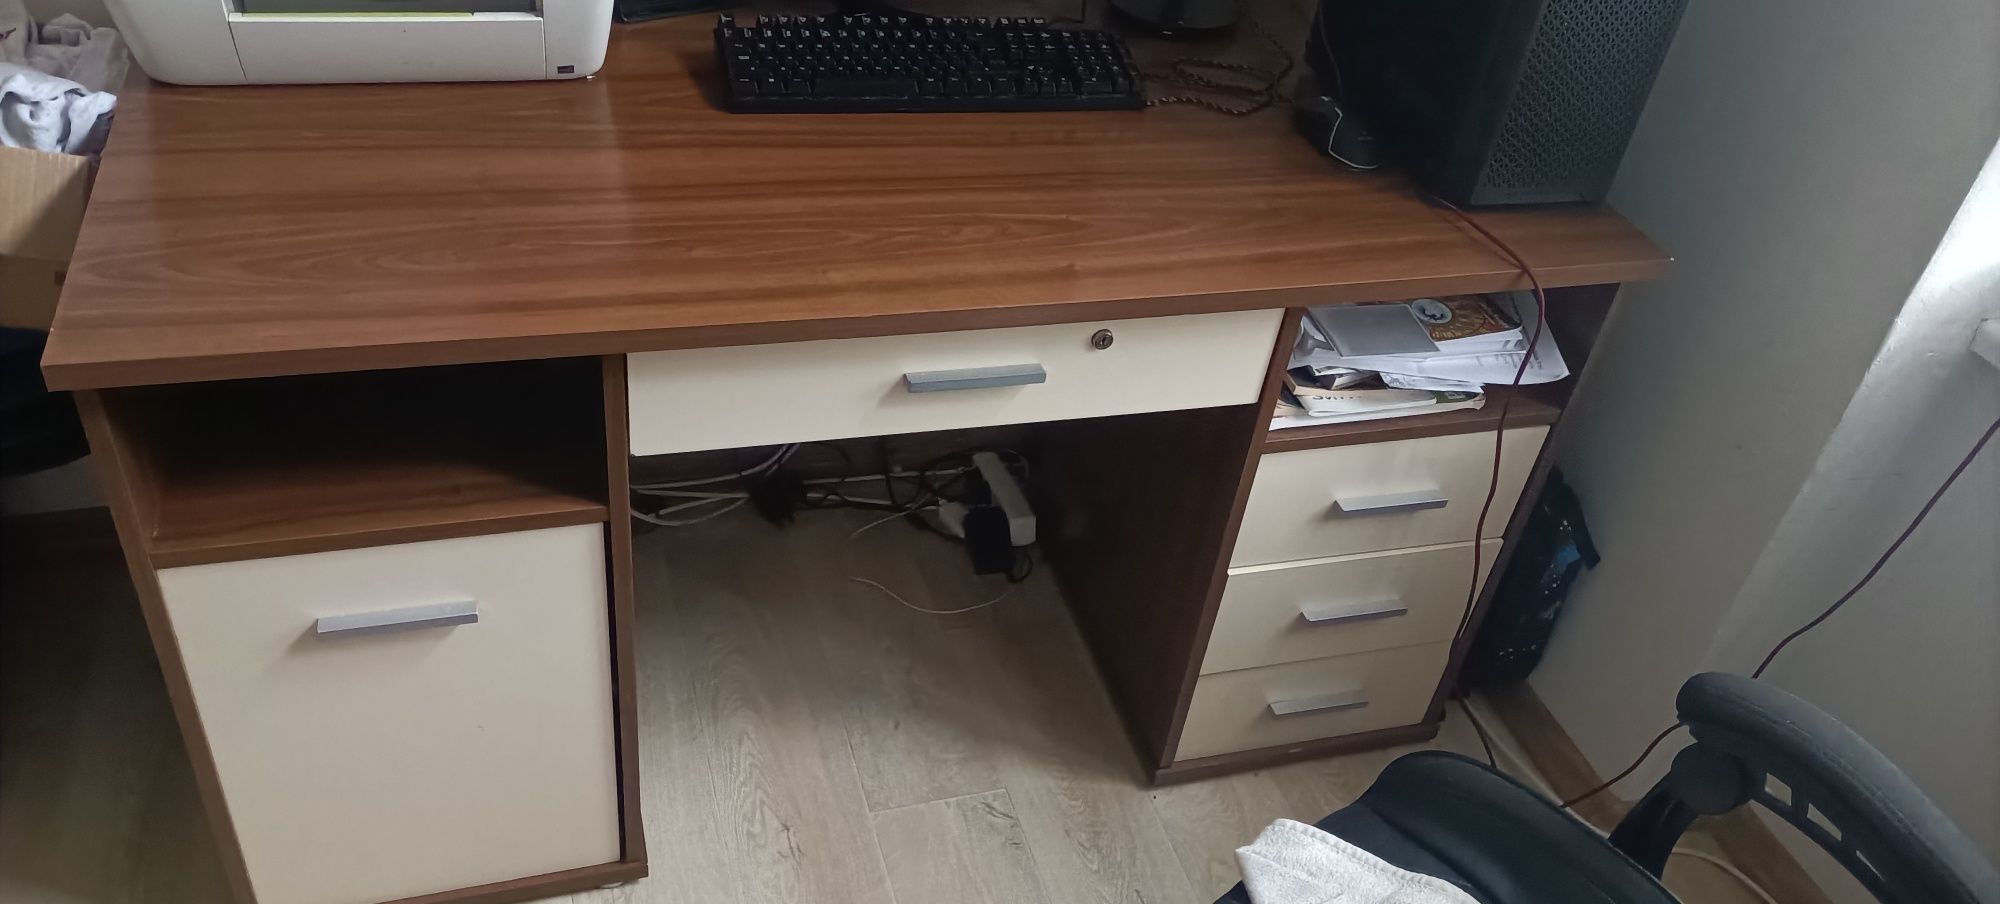 biurko szkolne w bardzo dobrym stanie , ślady mało widoczne